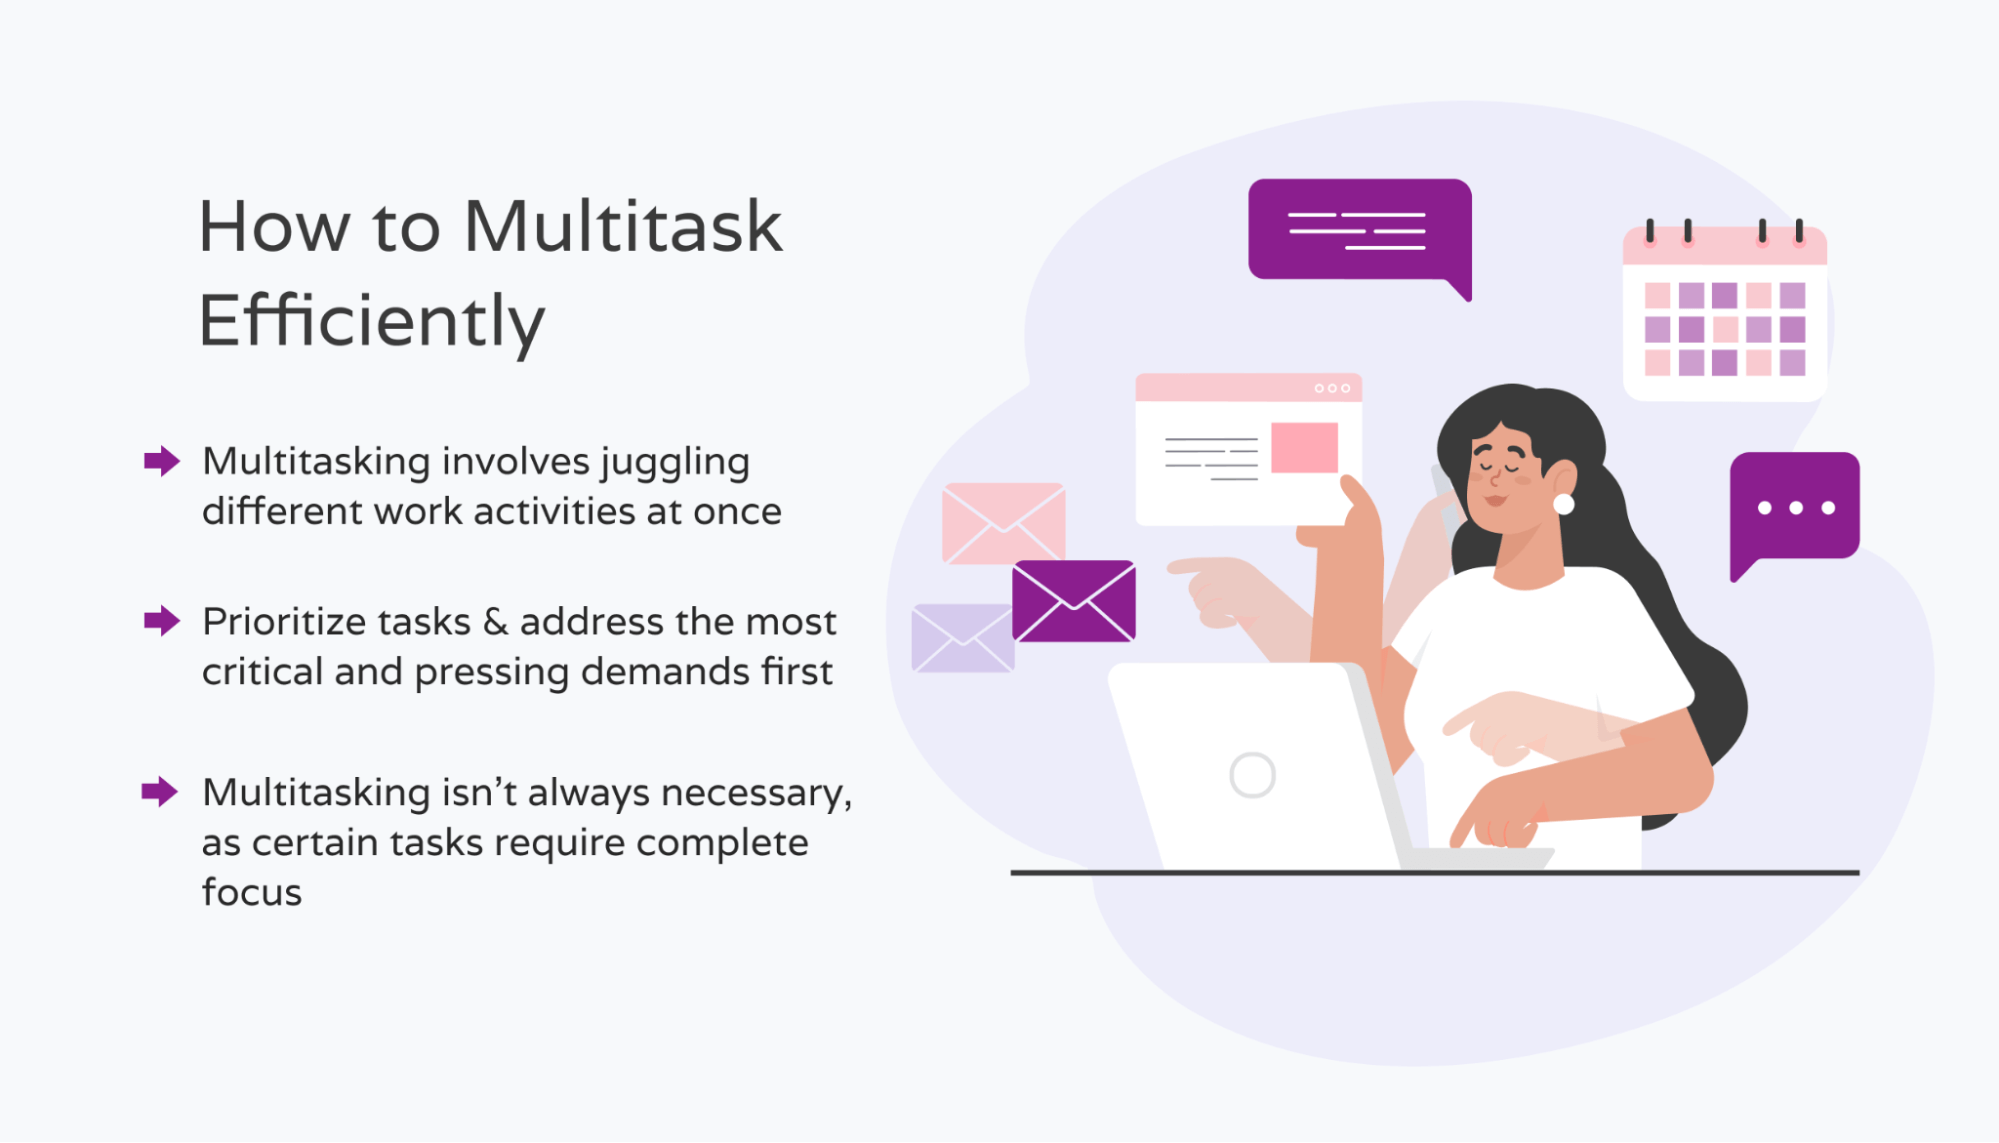 Tips for multitasking